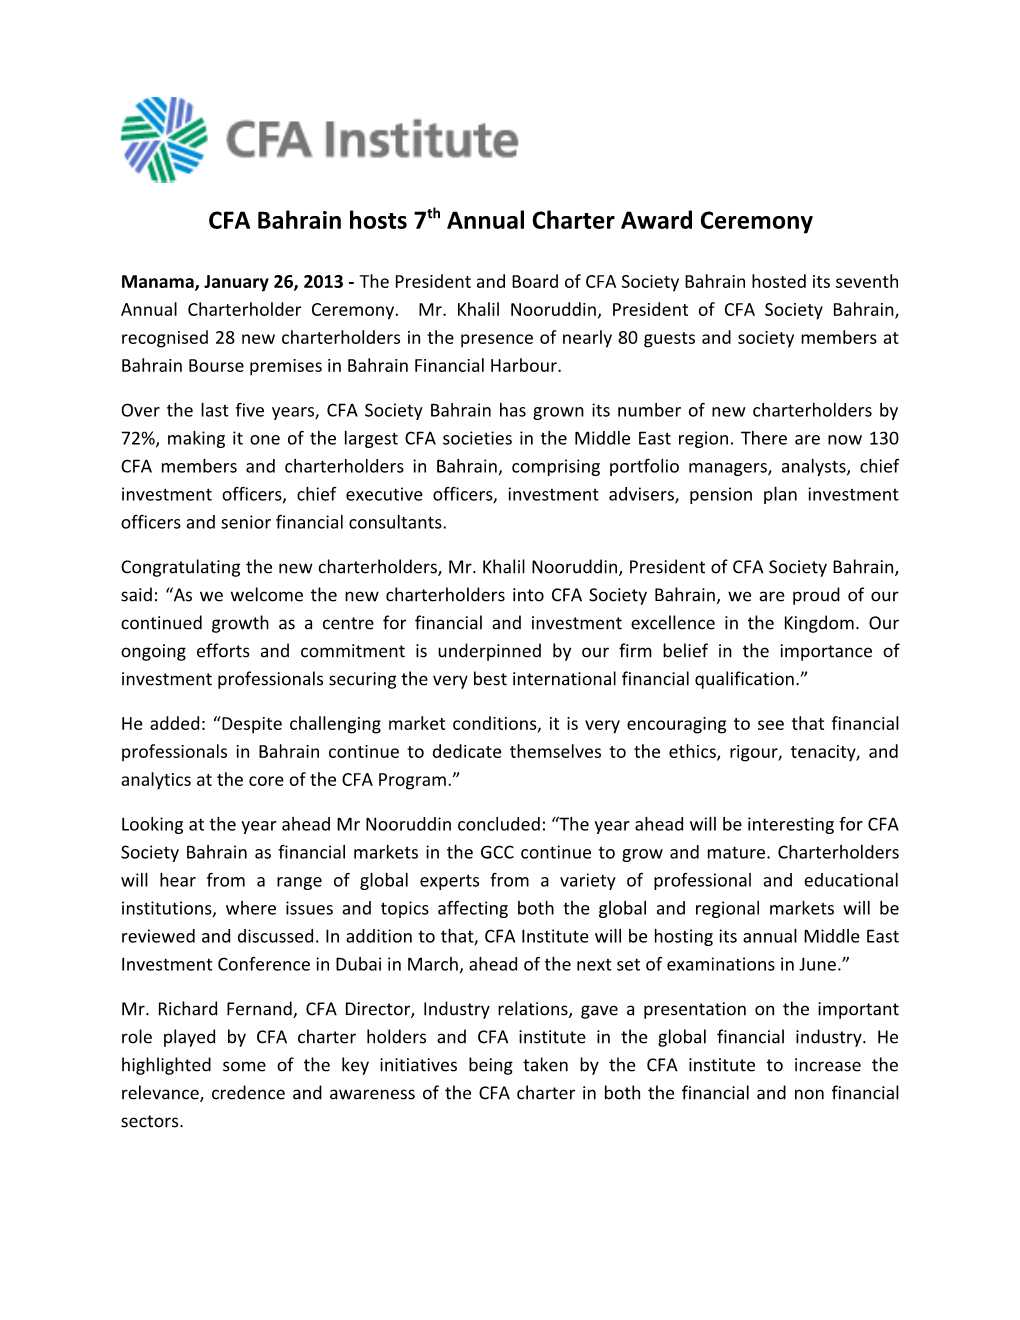 2013 CFA Bahrain Charter Awards Ceremony